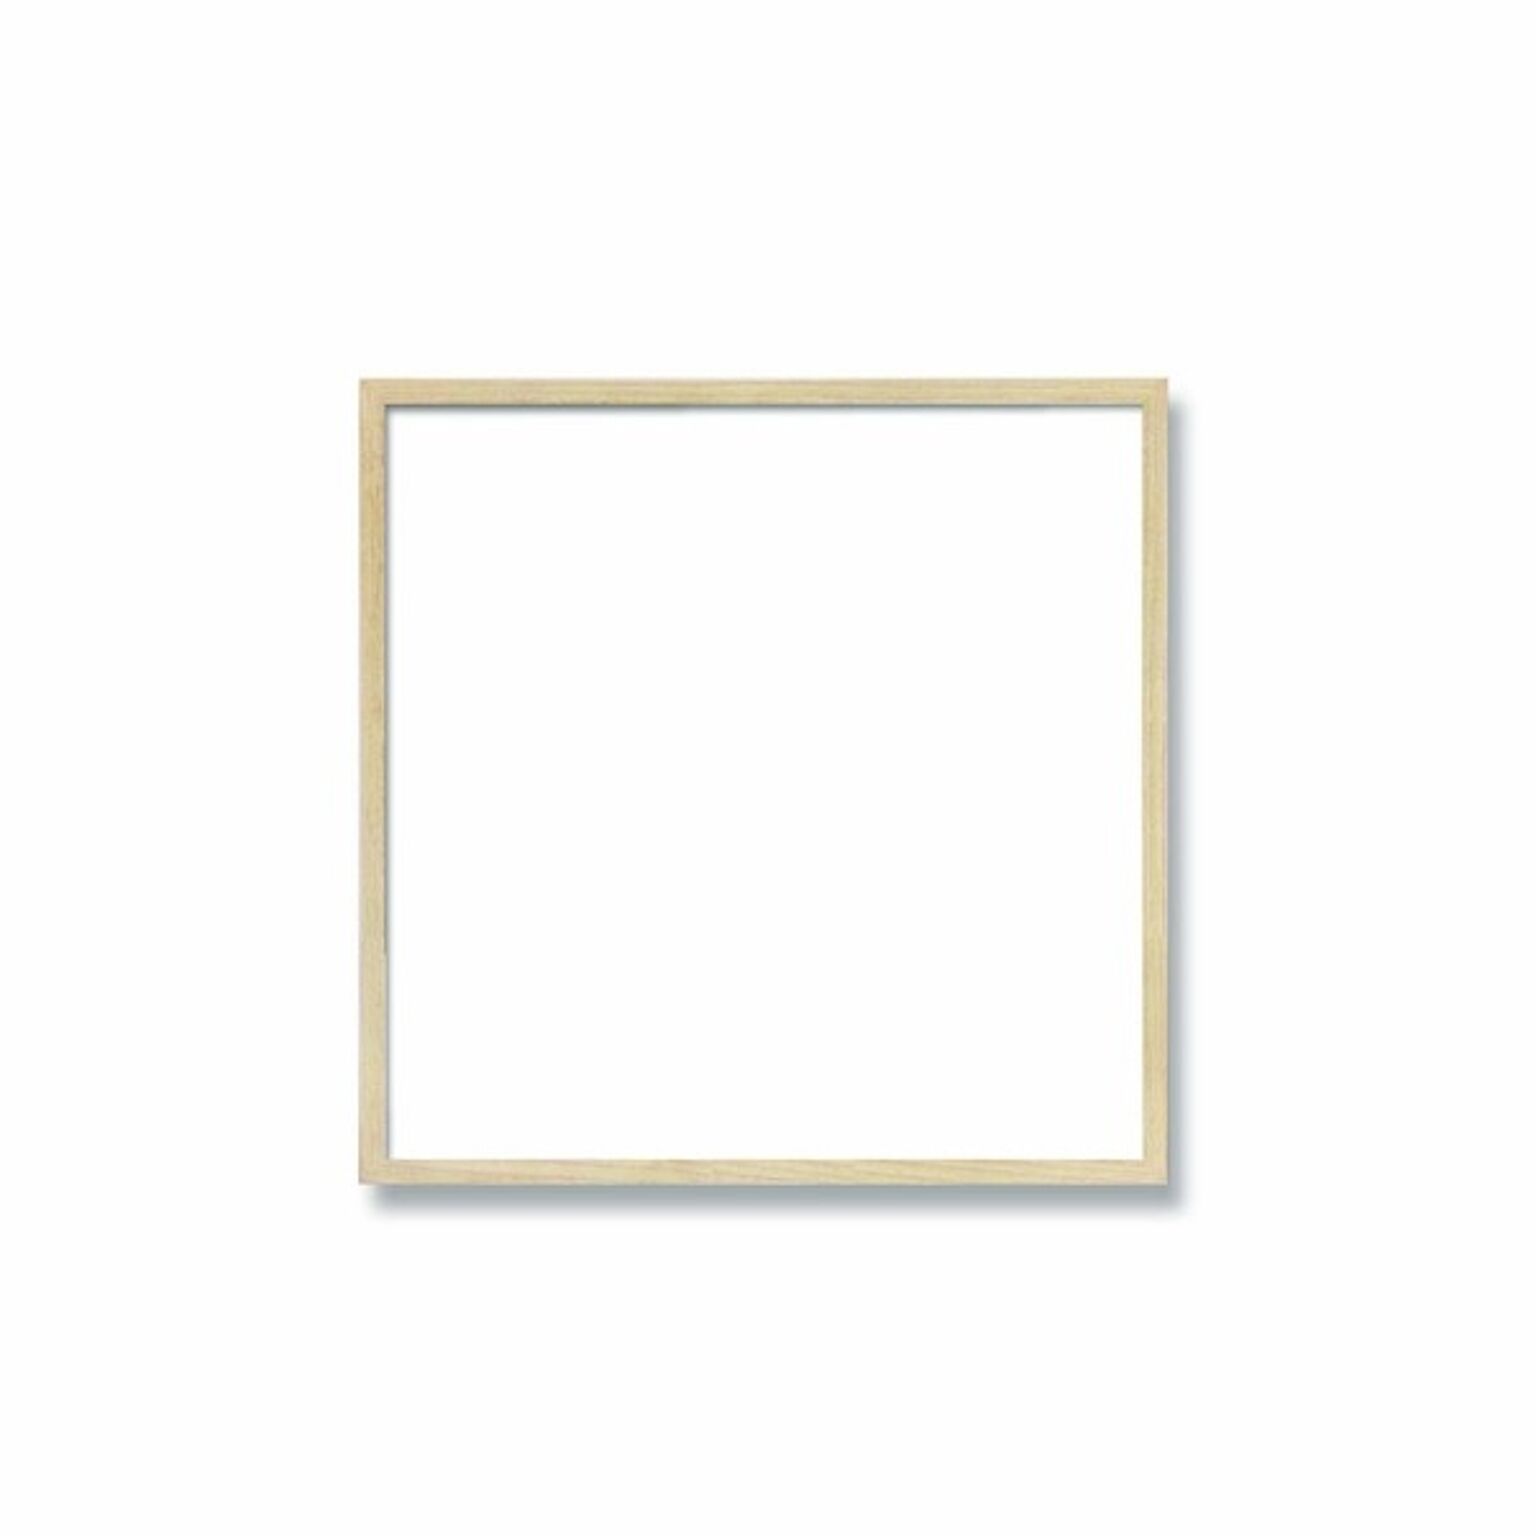 【角額】細い木製正方形額・壁掛けひも・紫外線から作品を守るUVカットアクリル付き　■9102 250角(250×250mm)「乳白」